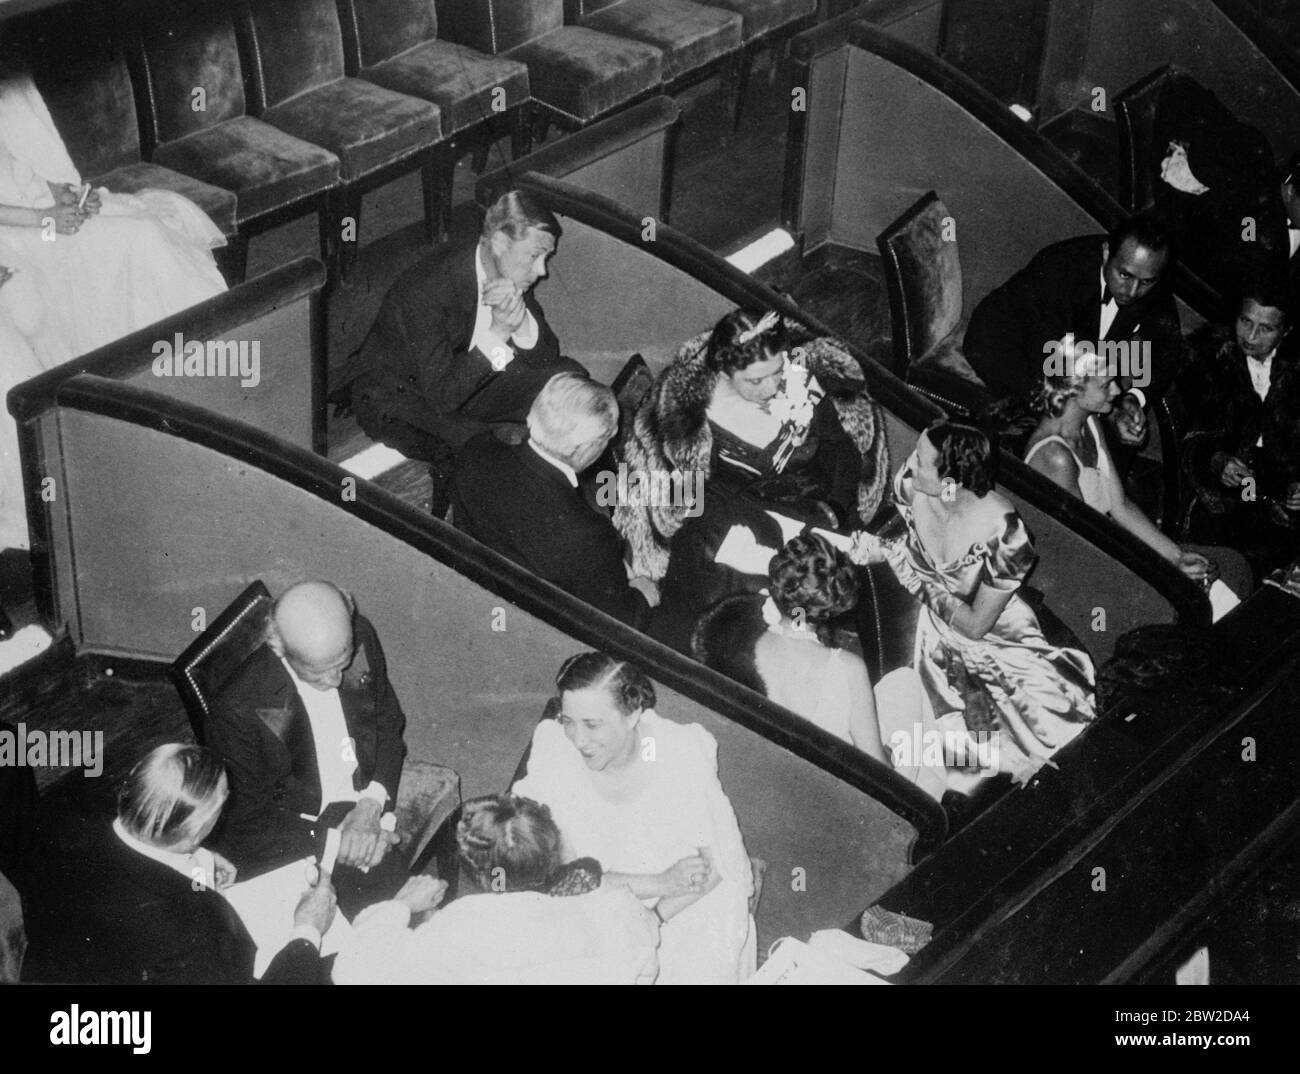 Le duc et la duchesse de Windsor, du Prince Edward VIII et de Wallis Simpson, à la première du film Katie au Théâtre Marivaux à Paris . Octobre 1938 Banque D'Images